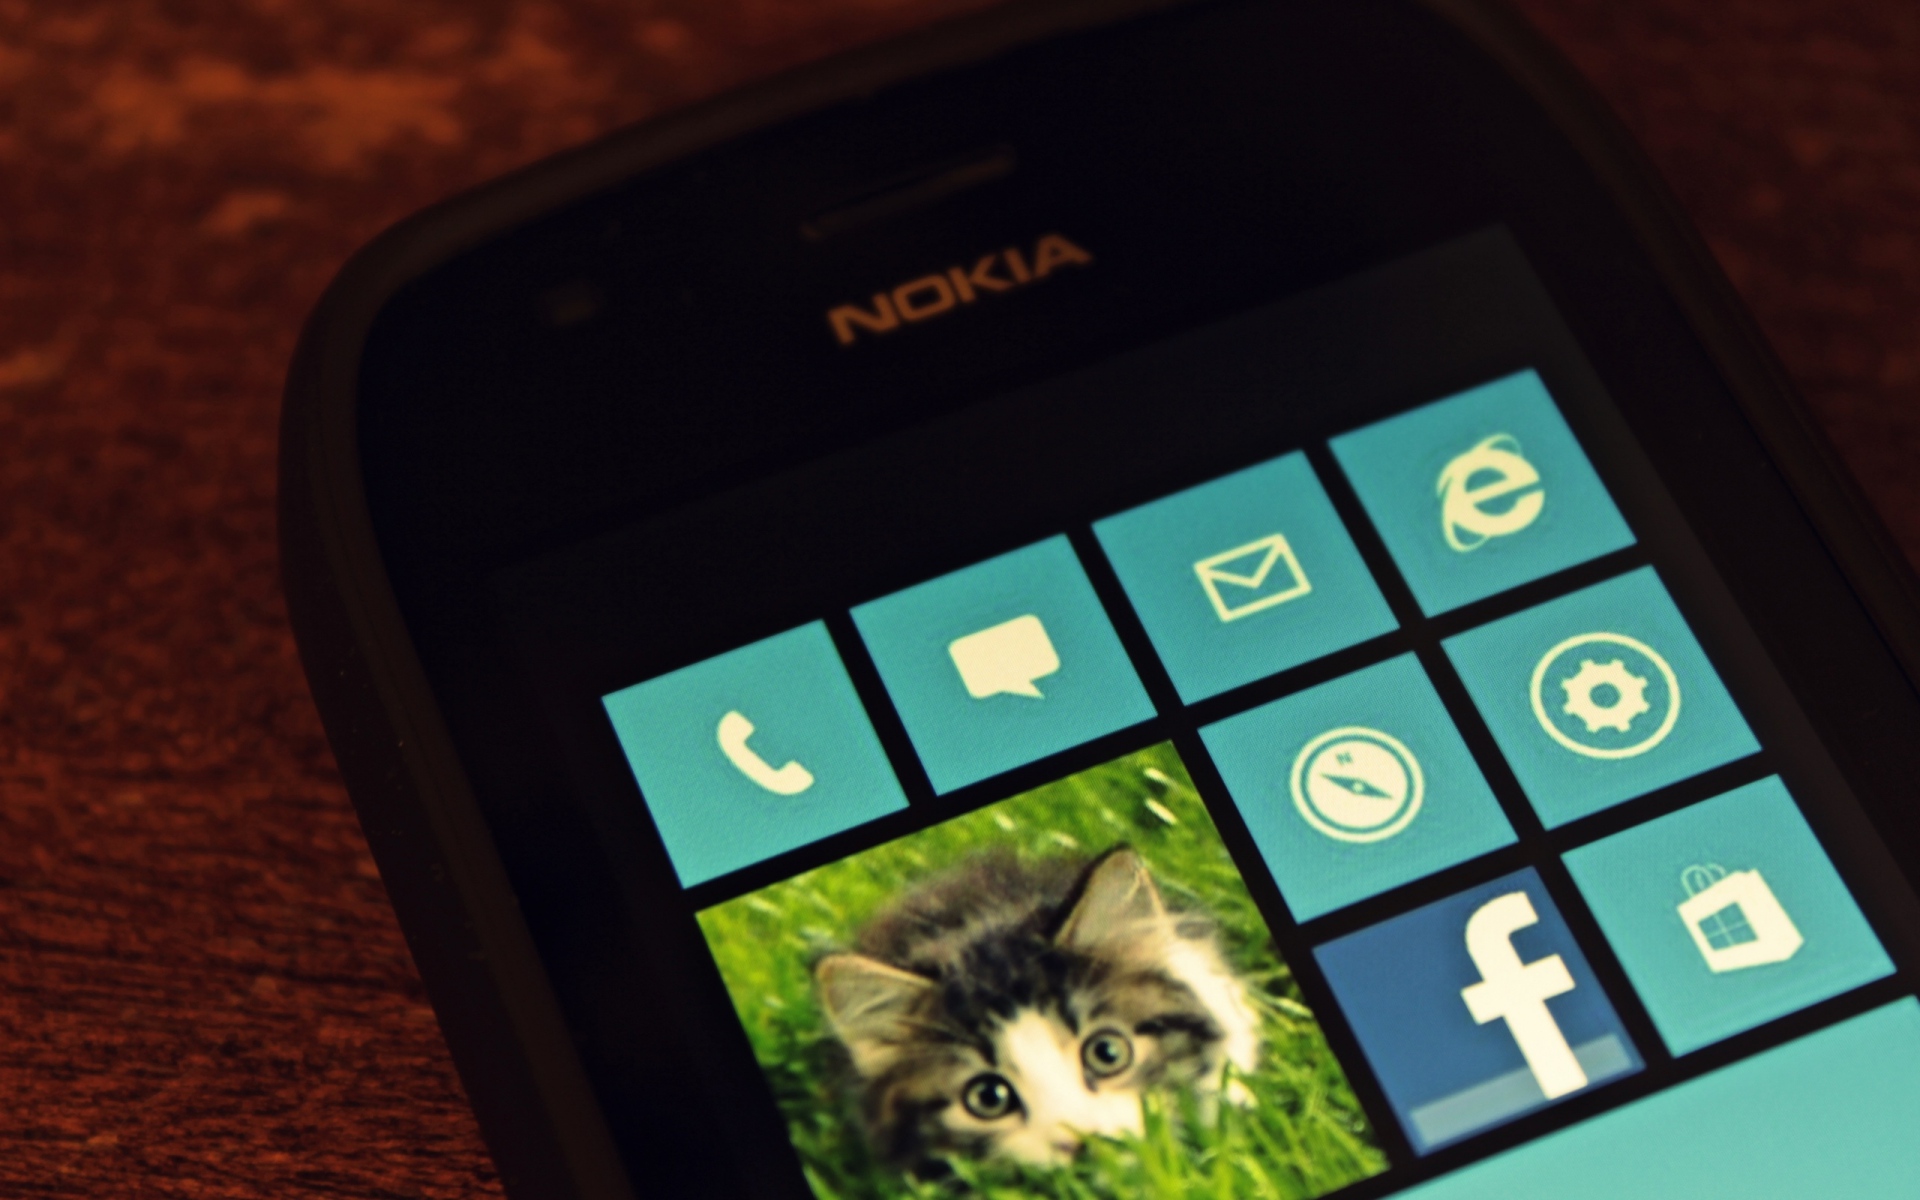 Картинки КР8, Nokia, сенсорный экран, мобильный телефон фото и обои на рабочий стол